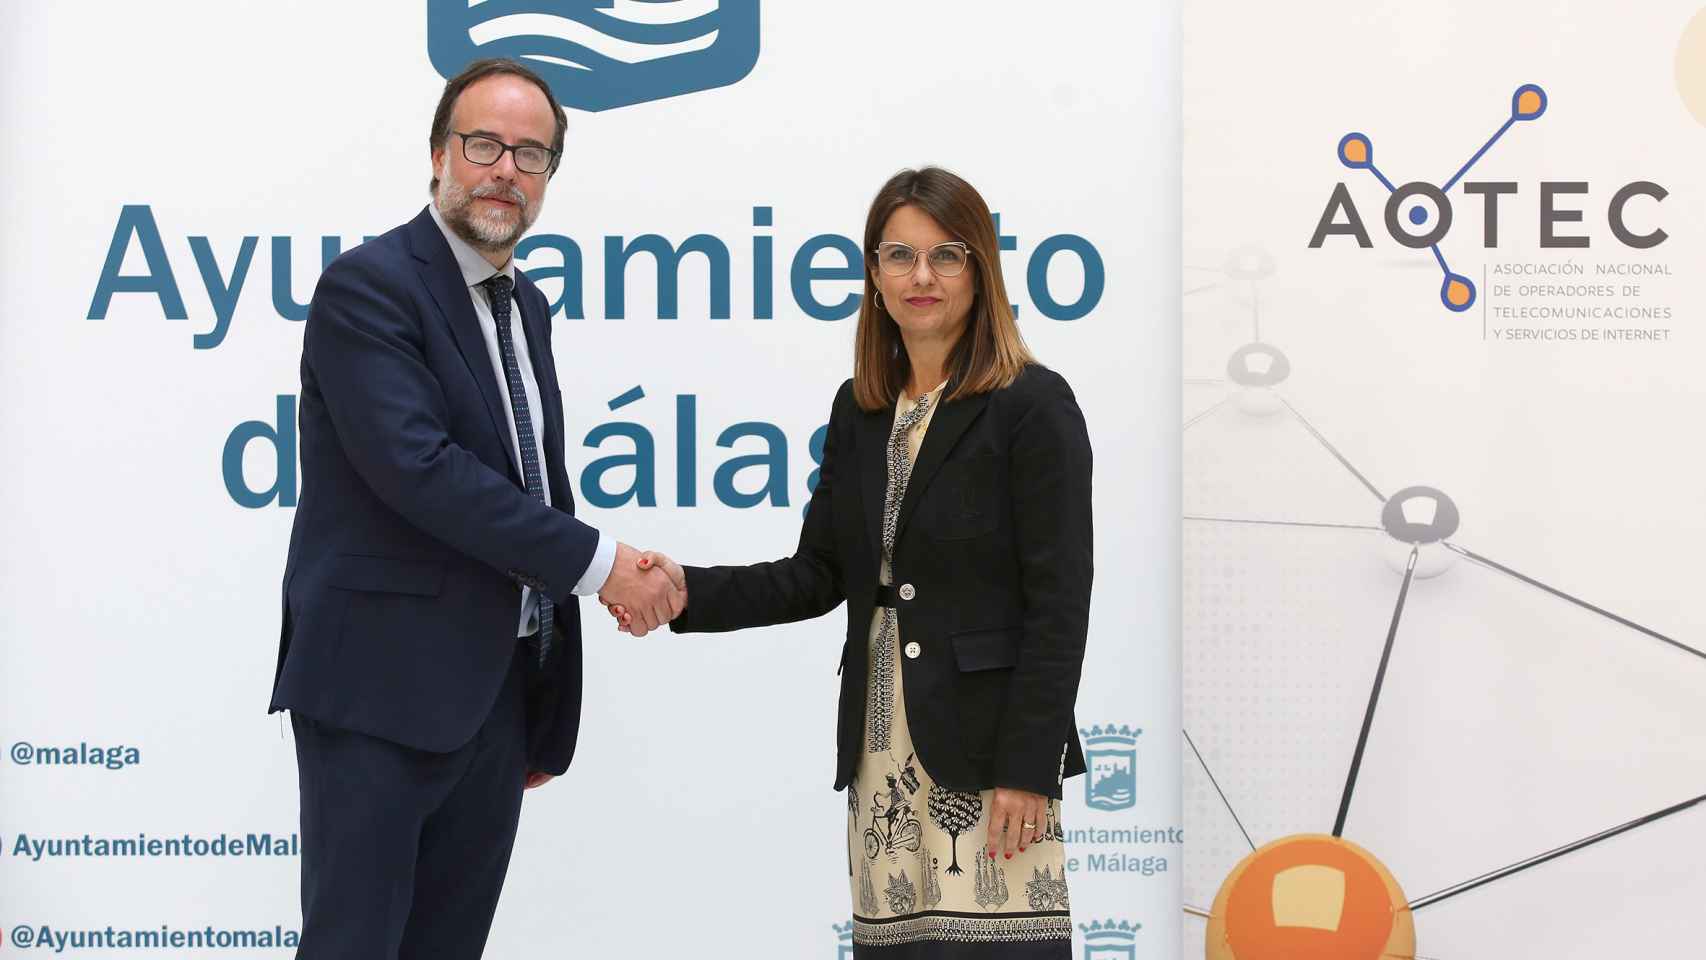 El director ejecutivo de Aotec, Gonzalo Elguezábal, y la concejala delegada del Área de Innovación y Digitalización Urbana, Susana Carillo.